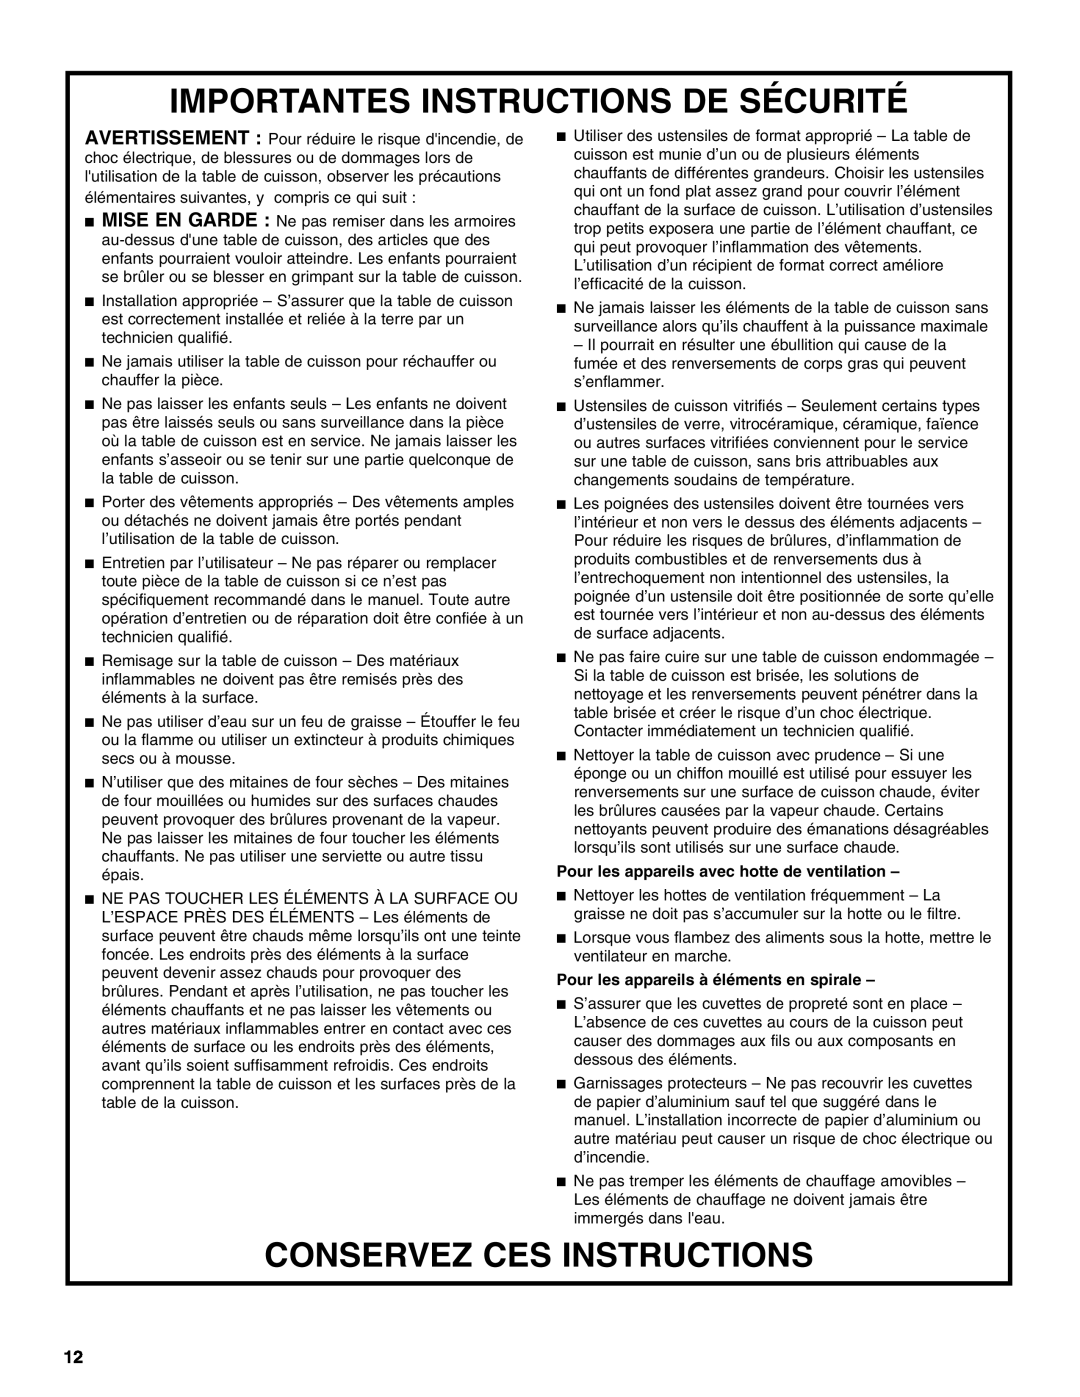 Whirlpool GJD3044L manual Importantes Instructions De Sécurité, Conservez Ces Instructions 